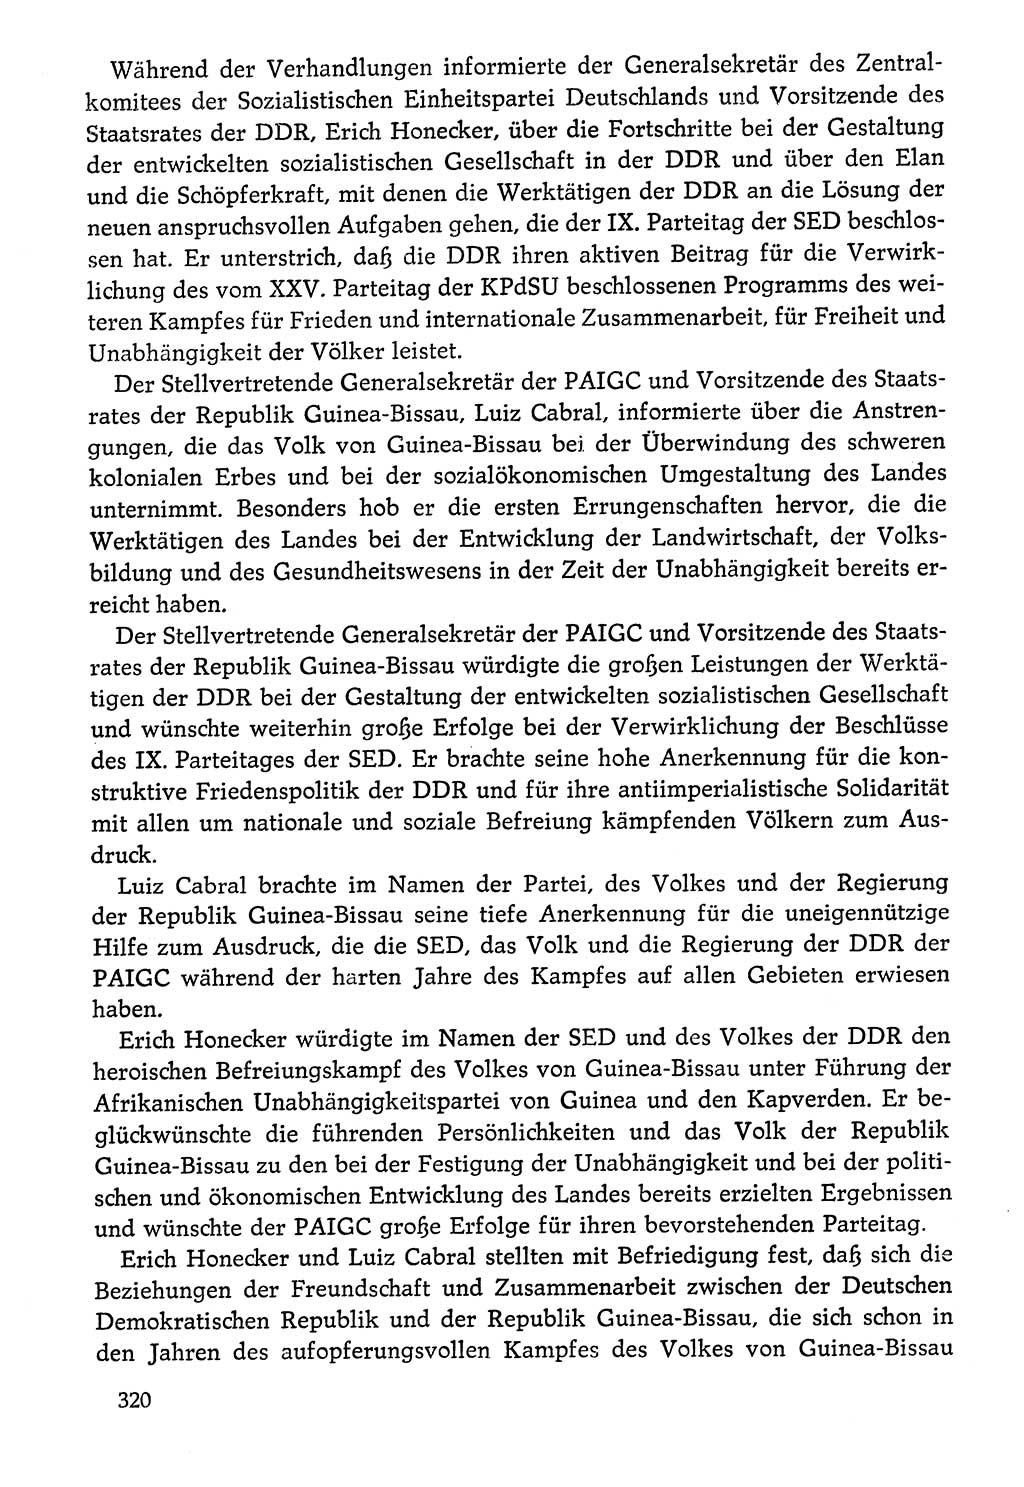 Dokumente der Sozialistischen Einheitspartei Deutschlands (SED) [Deutsche Demokratische Republik (DDR)] 1976-1977, Seite 320 (Dok. SED DDR 1976-1977, S. 320)